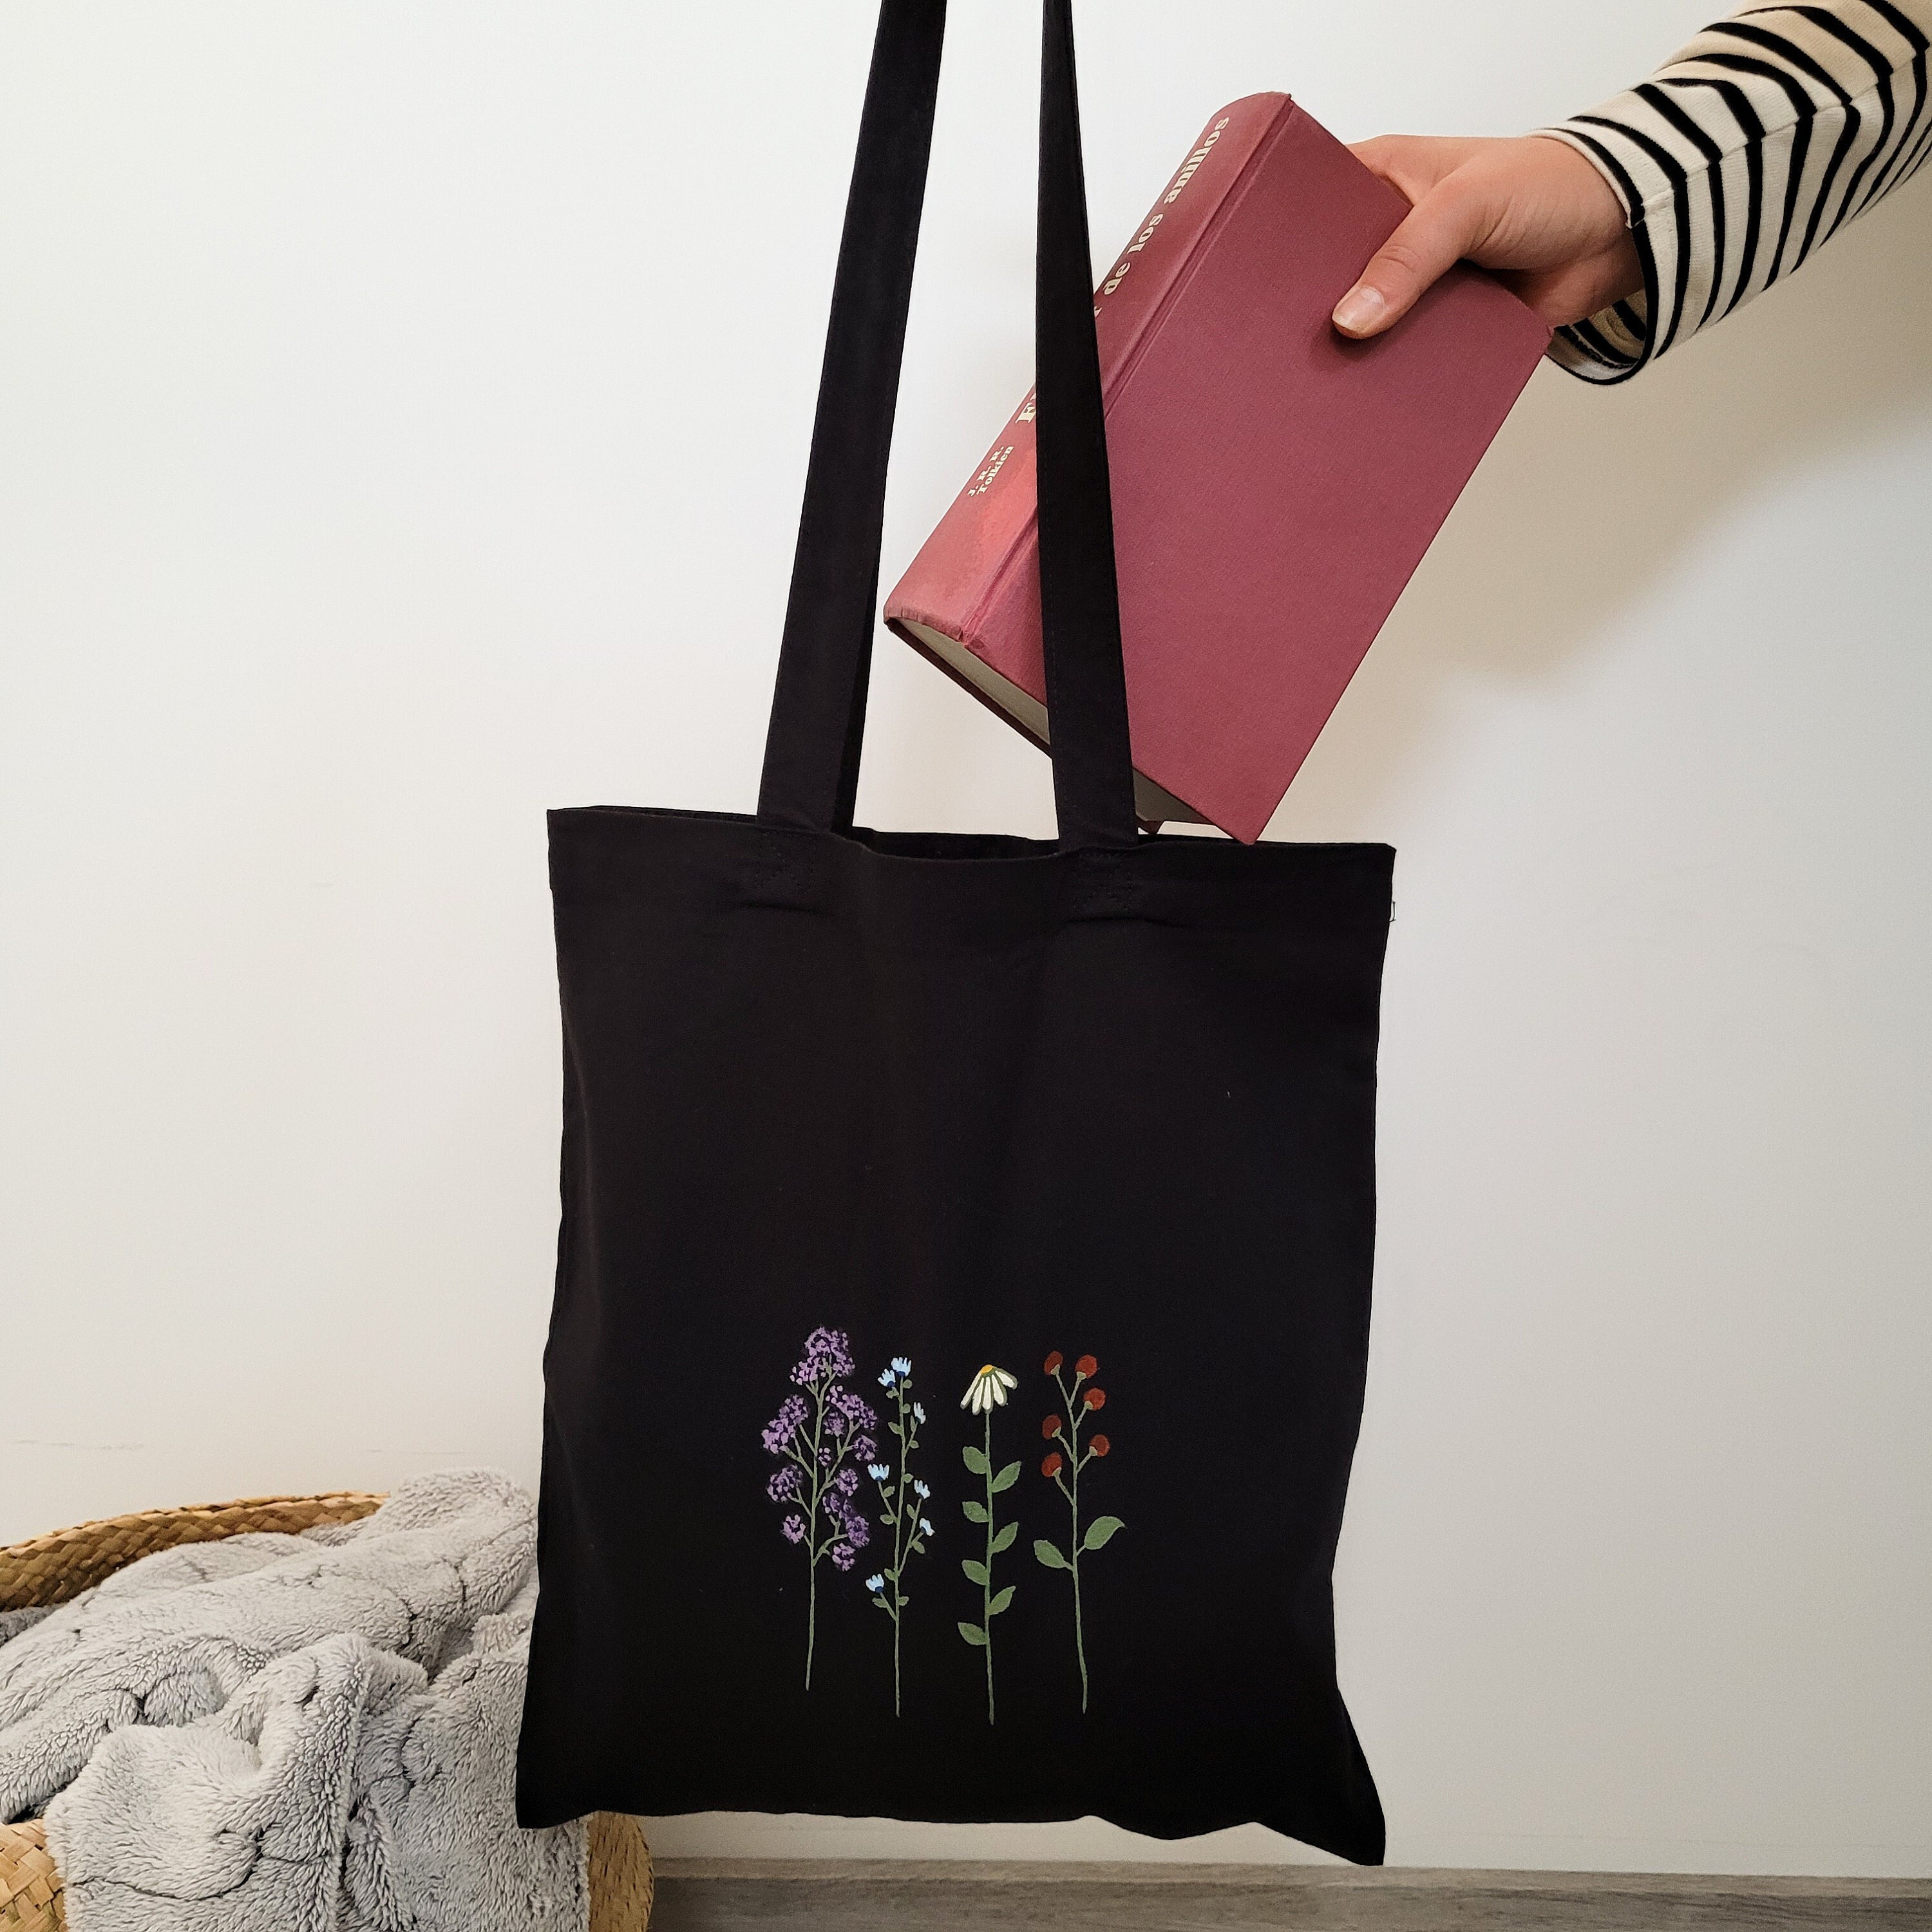 Tote bag negra flores, tote bag flores moradas, aesthetic tote bag negra,  bolsa para compra, bolsa negra de algodon, tote bag algodon flor -   España